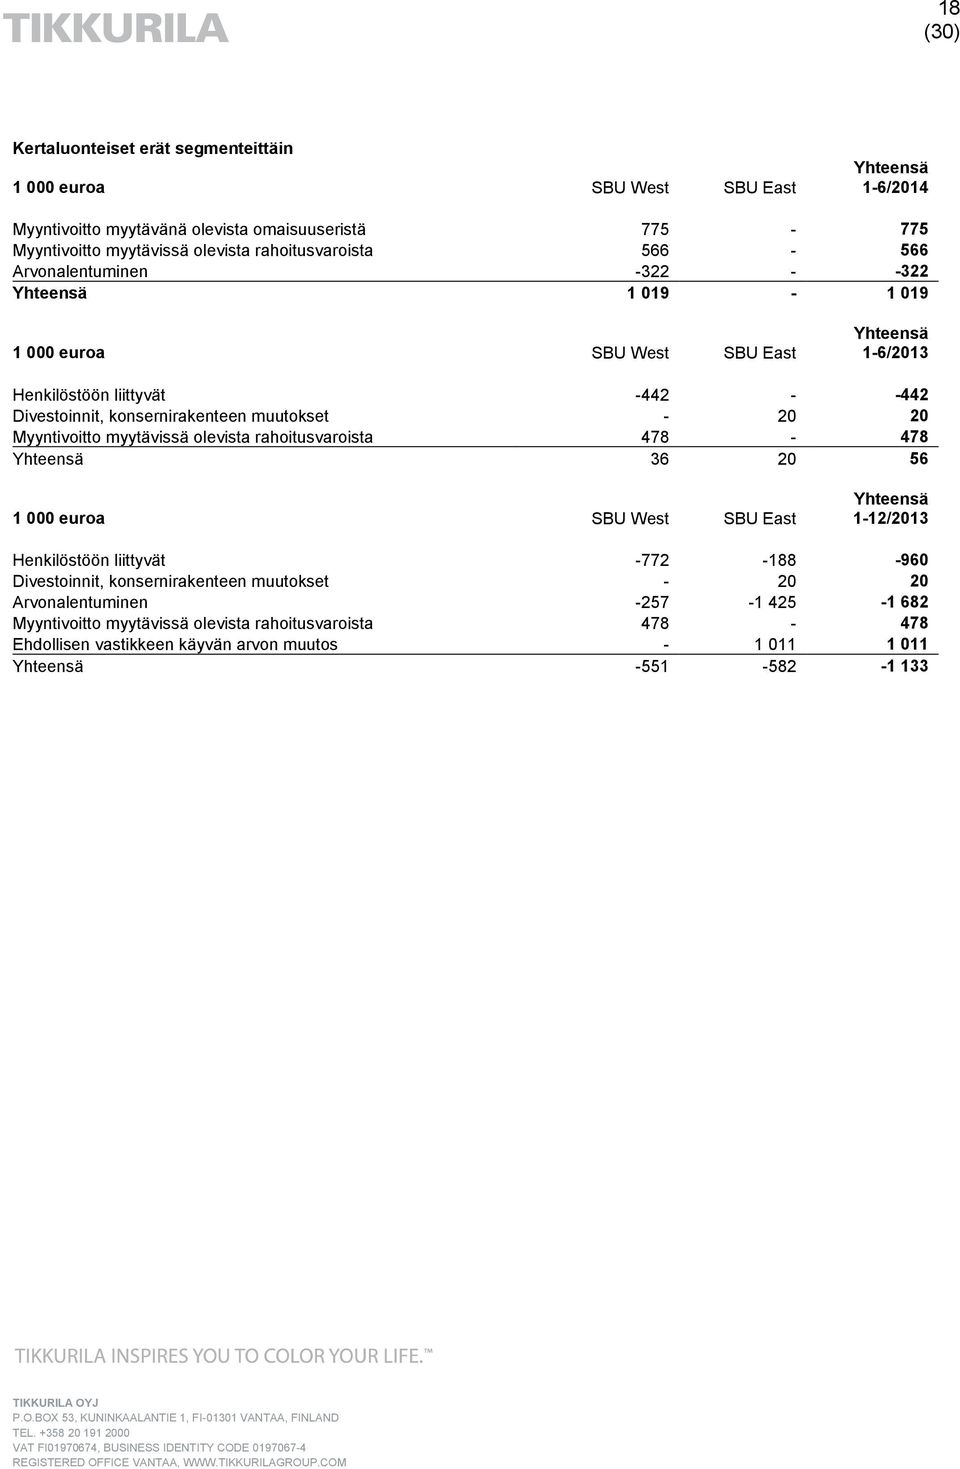 Myyntivoitto myytävissä olevista rahoitusvaroista 478-478 Yhteensä 36 20 56 1 000 euroa SBU West SBU East Yhteensä 1-12/2013 Henkilöstöön liittyvät -772-188 -960 Divestoinnit,